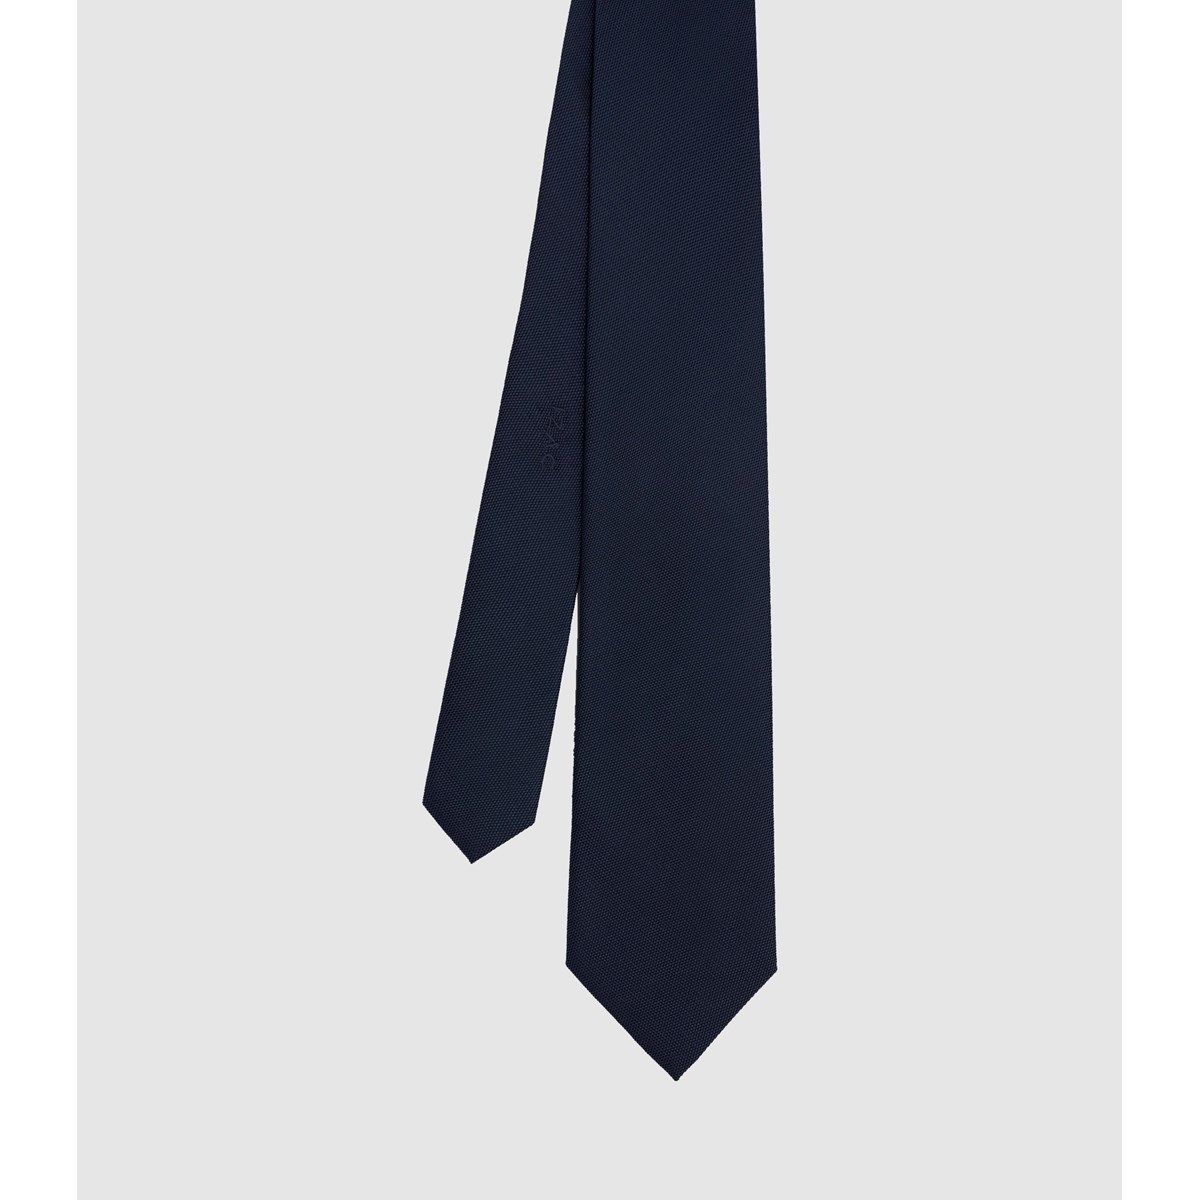 Cravate artisanale en soie ARAMIS La Redoute Homme Accessoires Cravates & Pochettes Nœuds papillons 